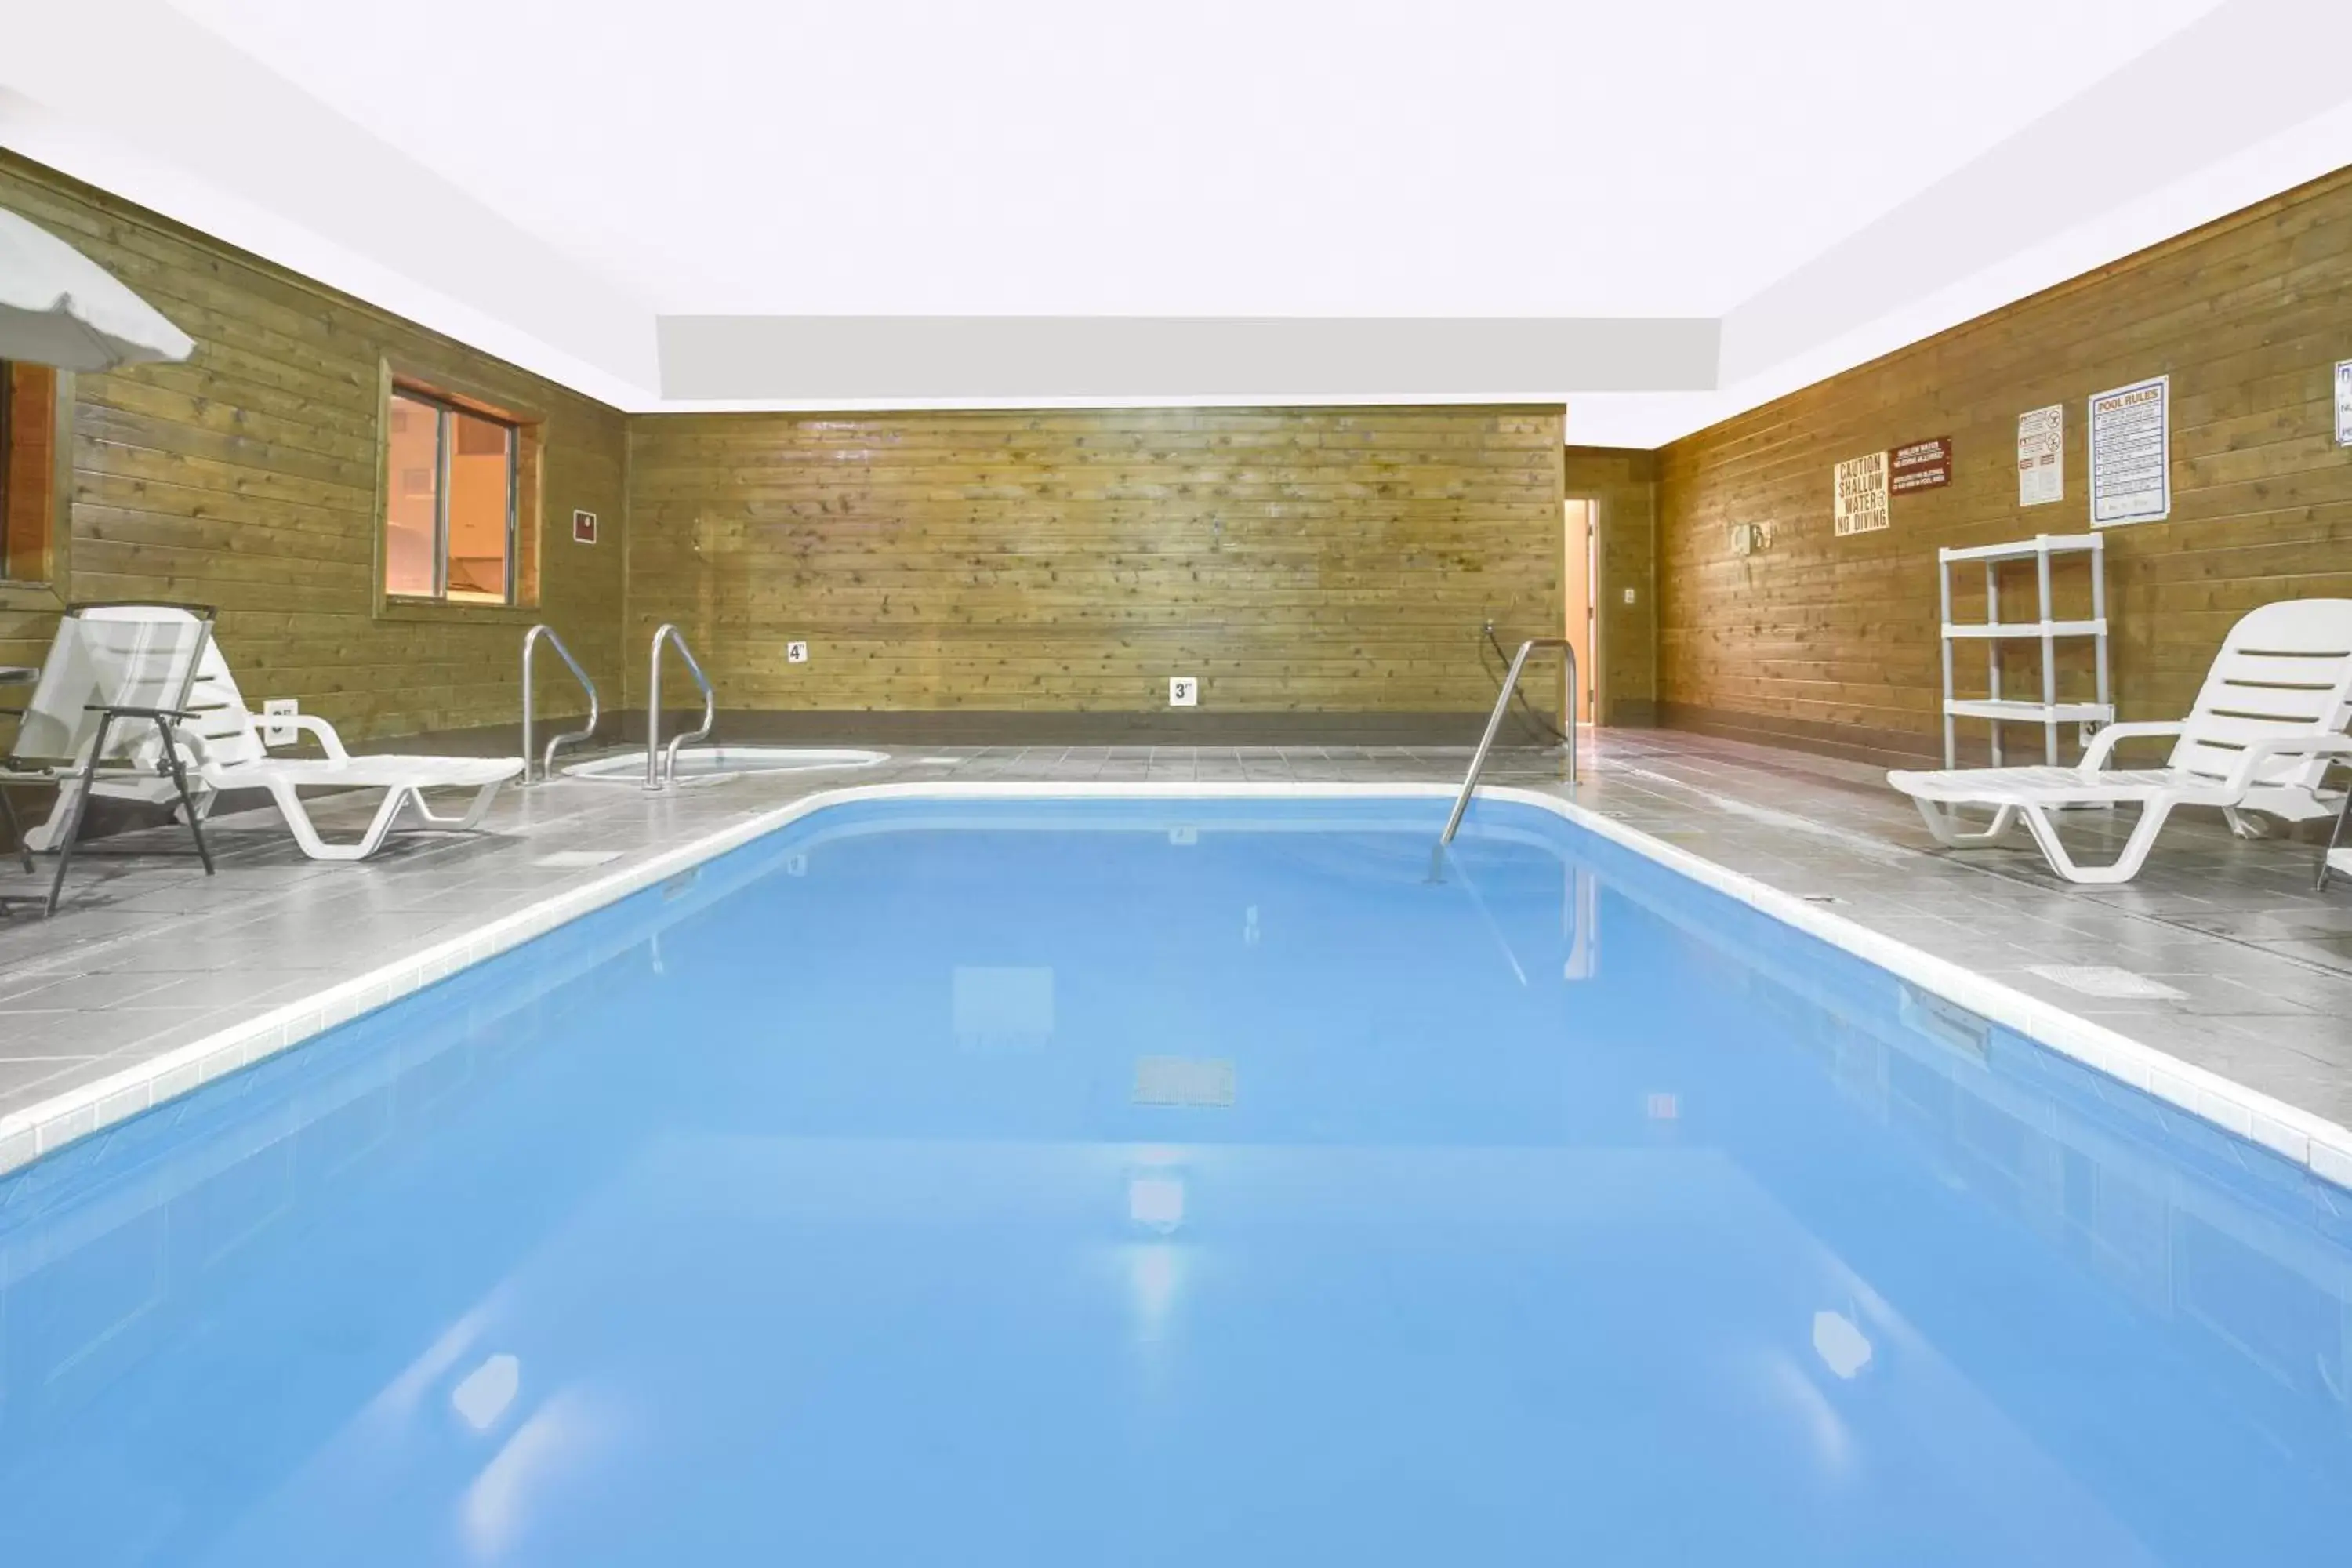 Hot Tub, Swimming Pool in Days Inn by Wyndham North Platte